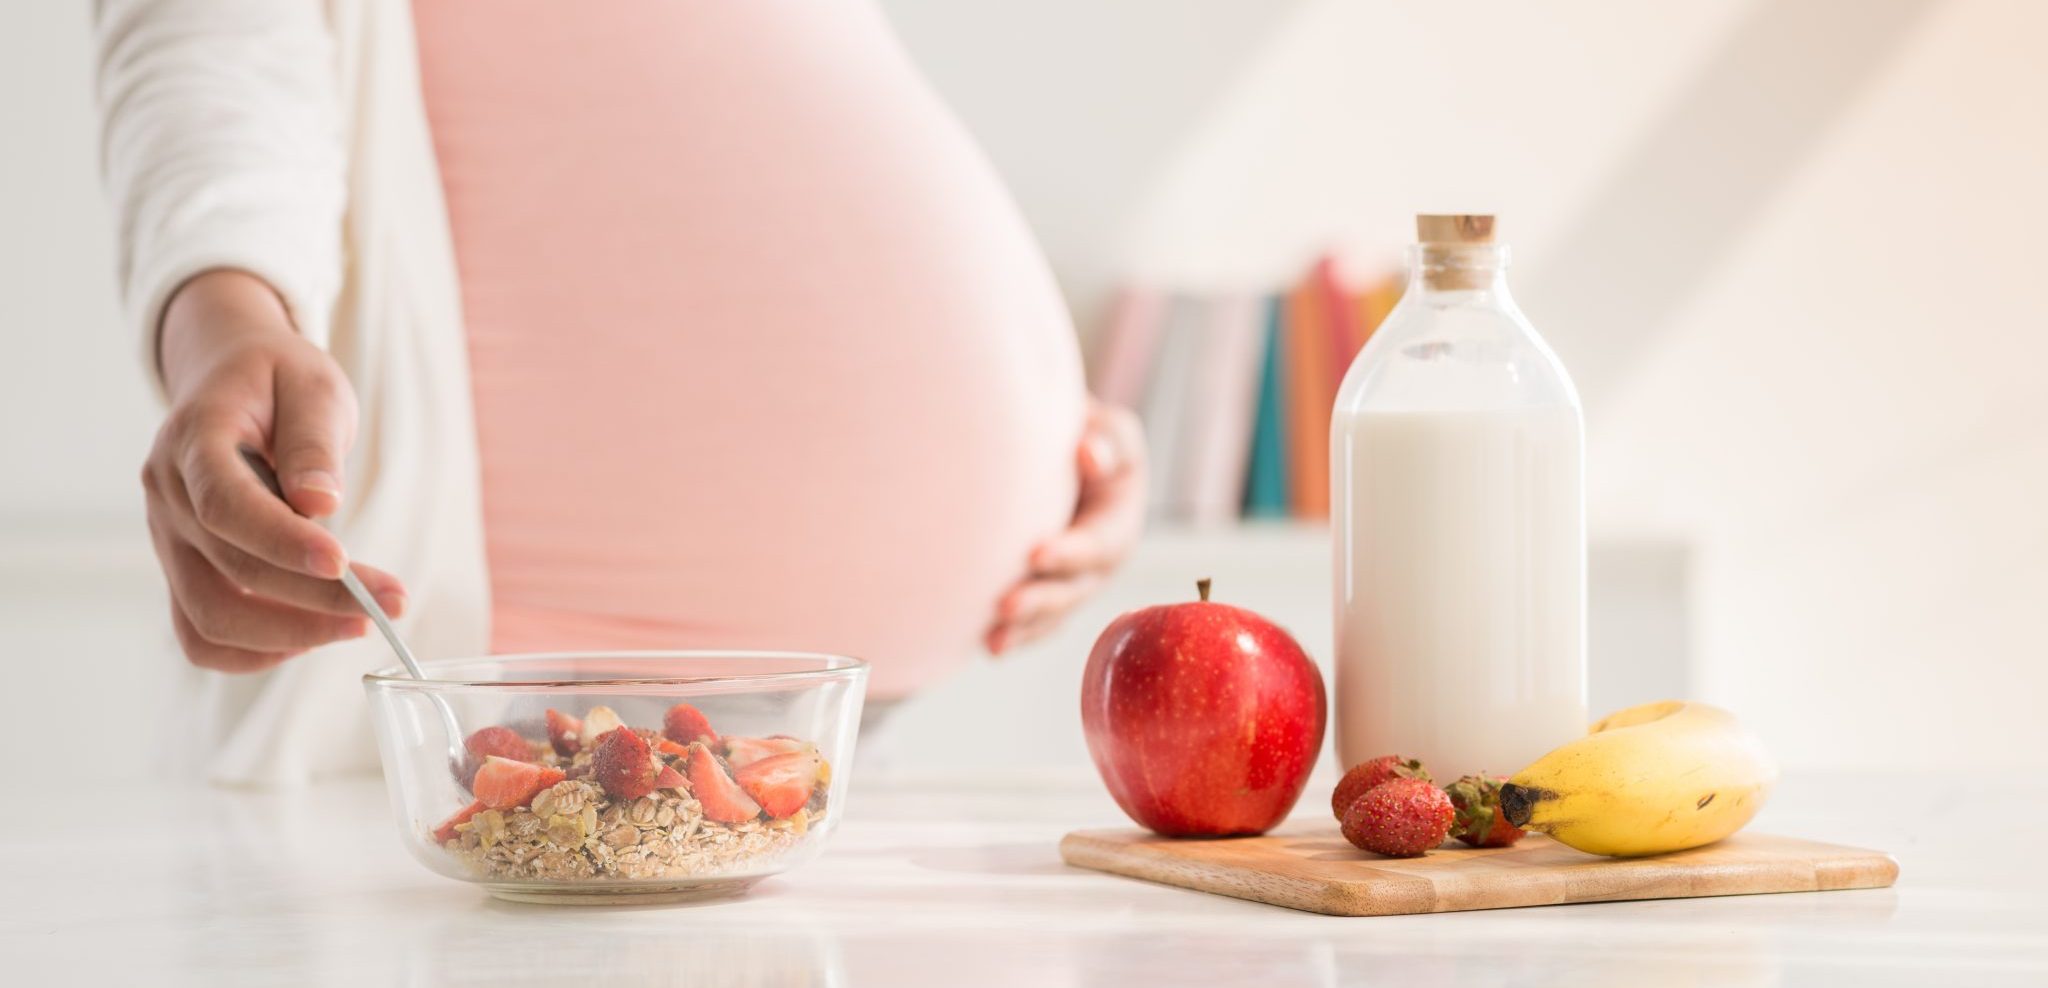 Gaya hidup dan pola makan, 2 faktor penting saat masa kehamilan